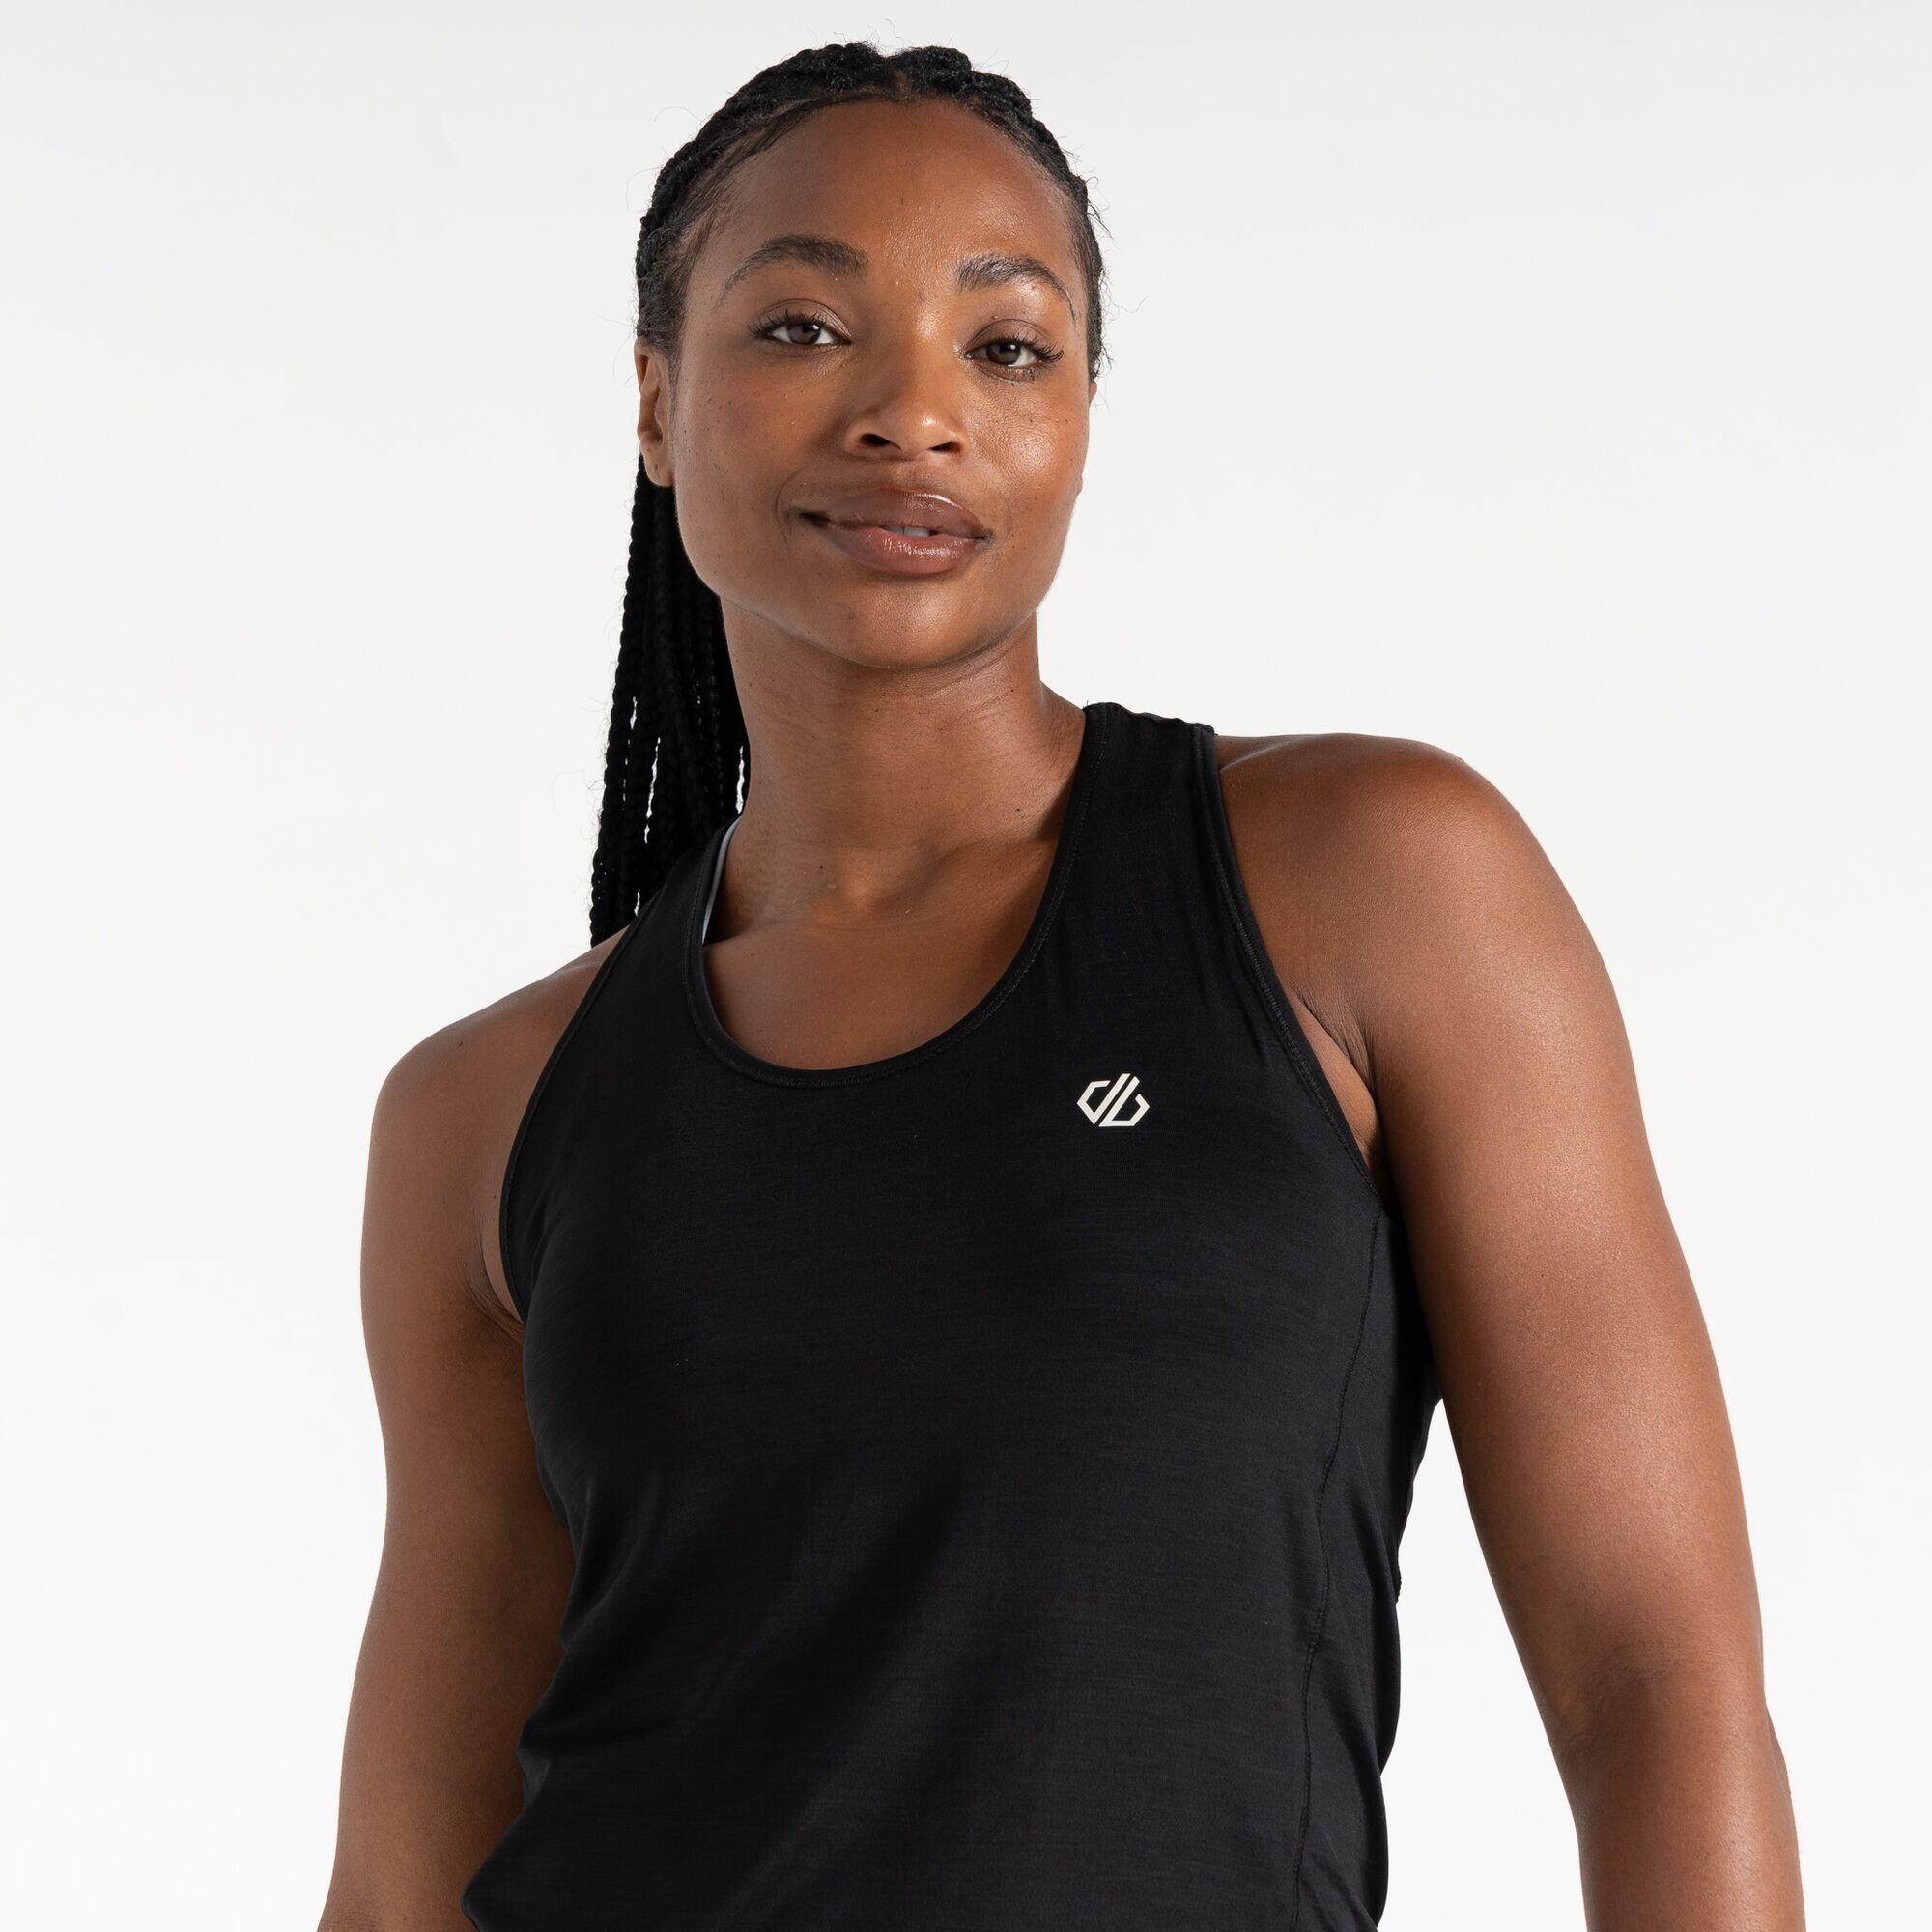 Modernize II Women's Fitness Sleeveless Vest - Black 4/5